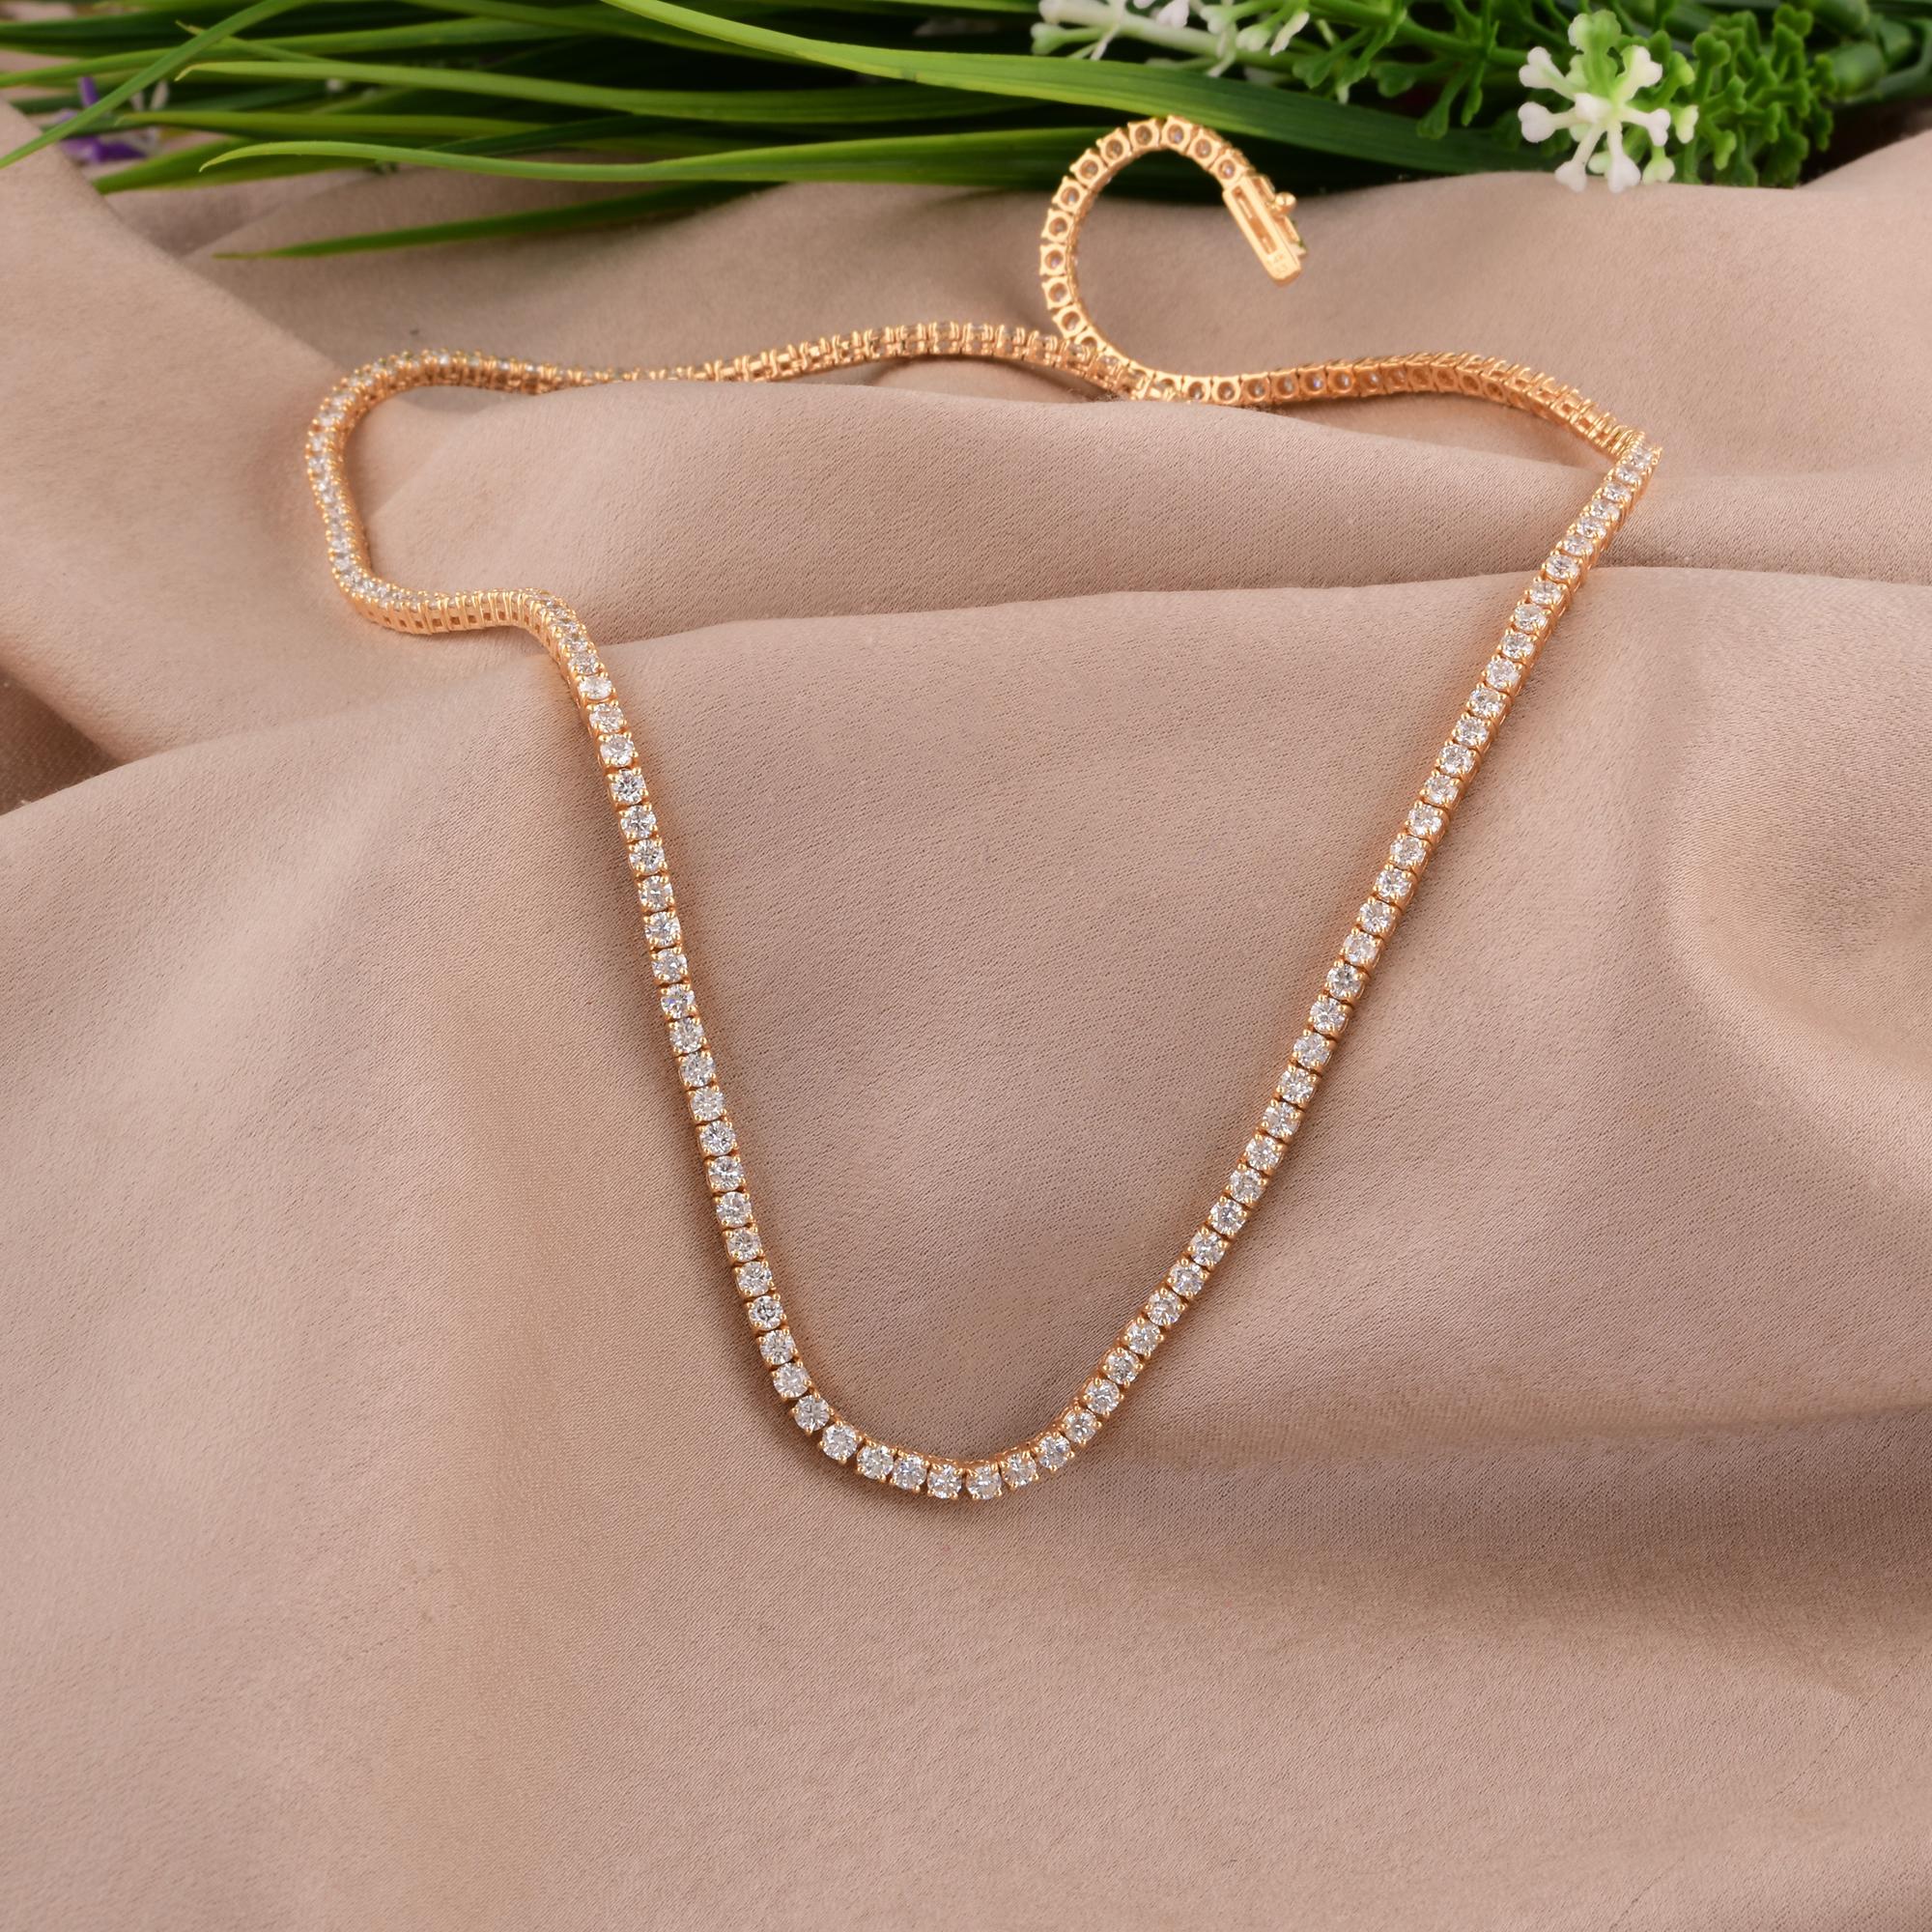 Wir stellen Ihnen unsere prächtige Tennis-Halskette mit natürlichen 6,60 Karat Diamanten vor, eine atemberaubende Darstellung von Eleganz und Luxus, die sorgfältig aus 14 Karat Gelbgold gefertigt wurde. Diese Halskette ist mehr als nur ein